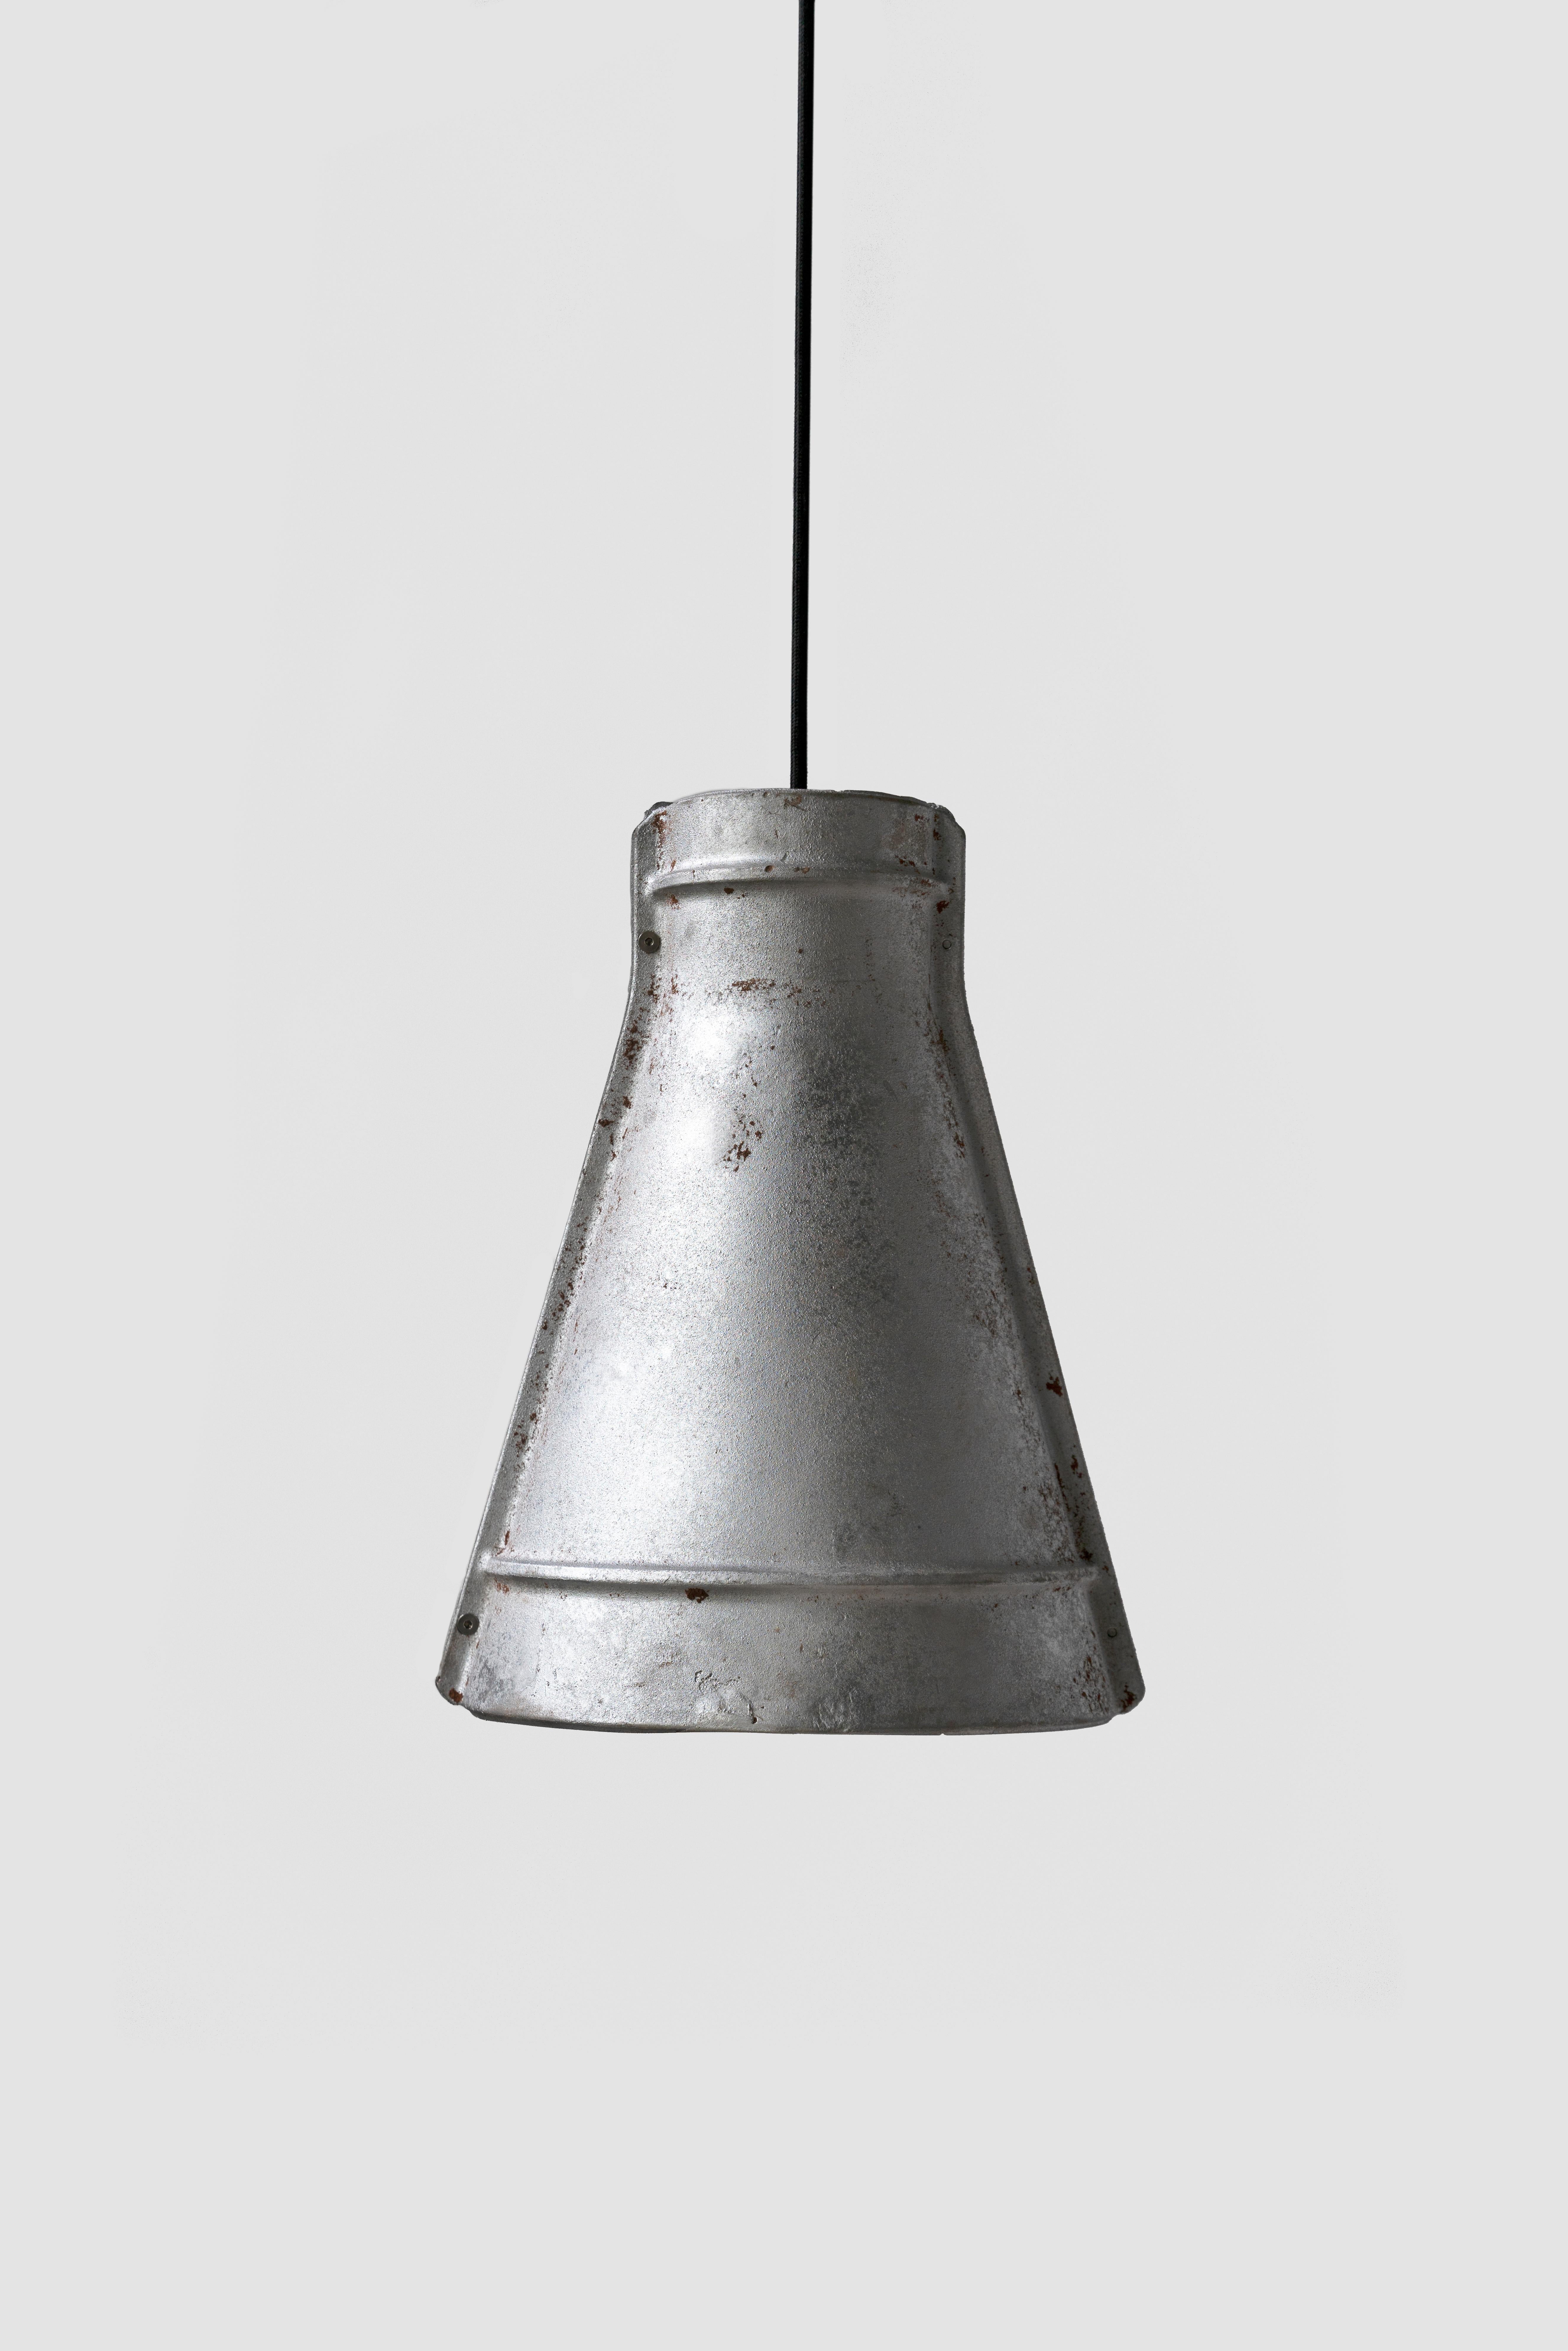 Contemporary Industrial Pendant Lamp 'Zero' in Aluminum ‘Large’ For Sale 1